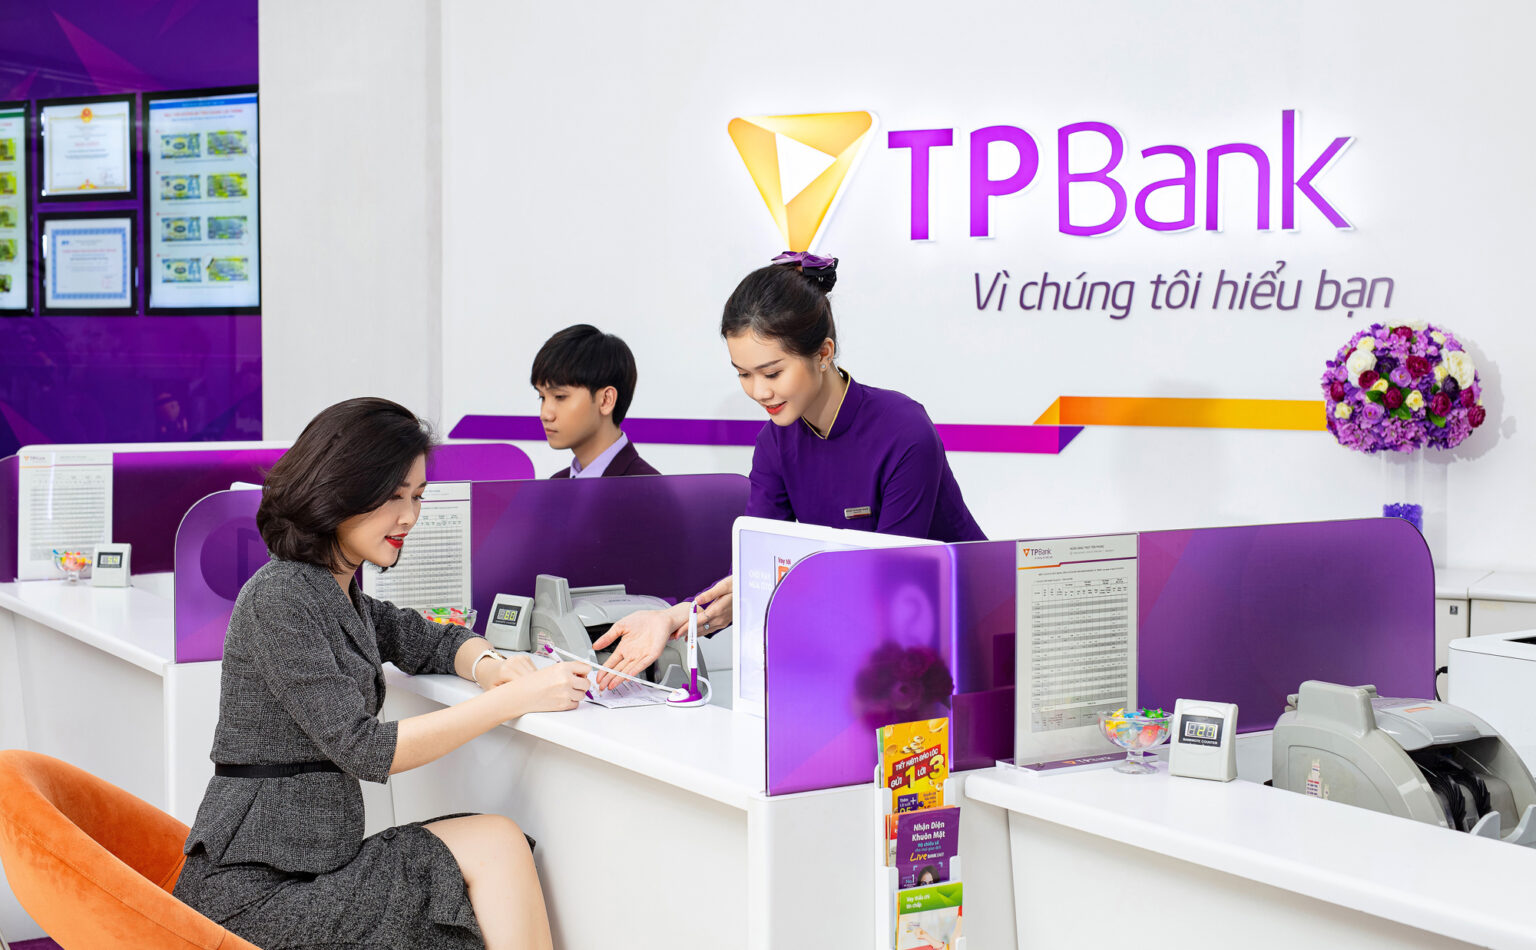 Loại thẻ TPBank EVO có rút được tiền không và phí rút bao nhiêu